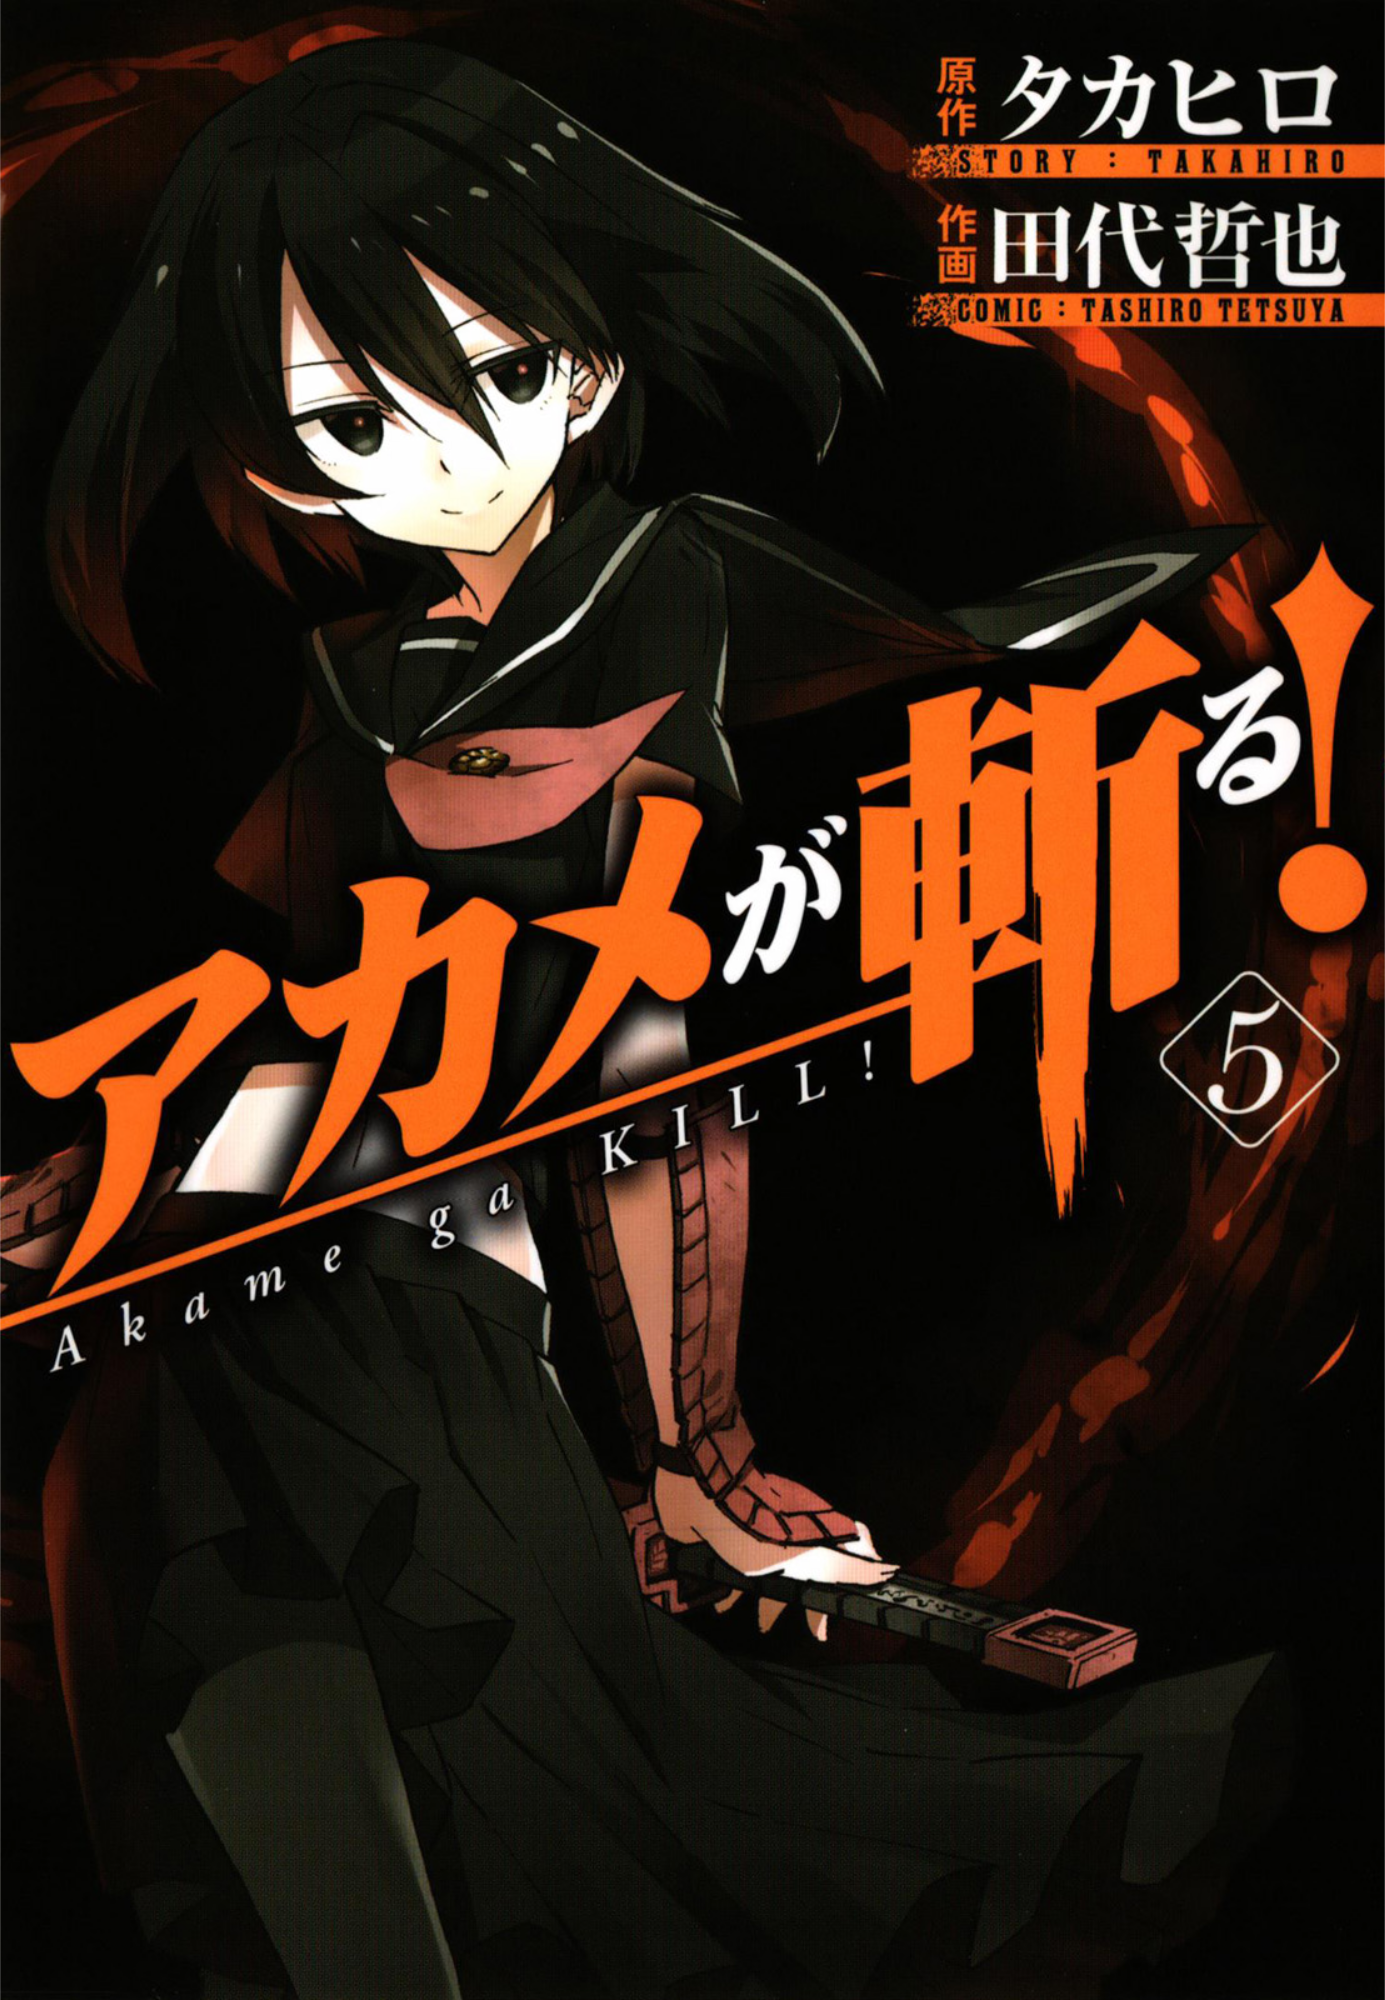 Akame ga KILL!, Vol. 5 ebook by Takahiro - Rakuten Kobo